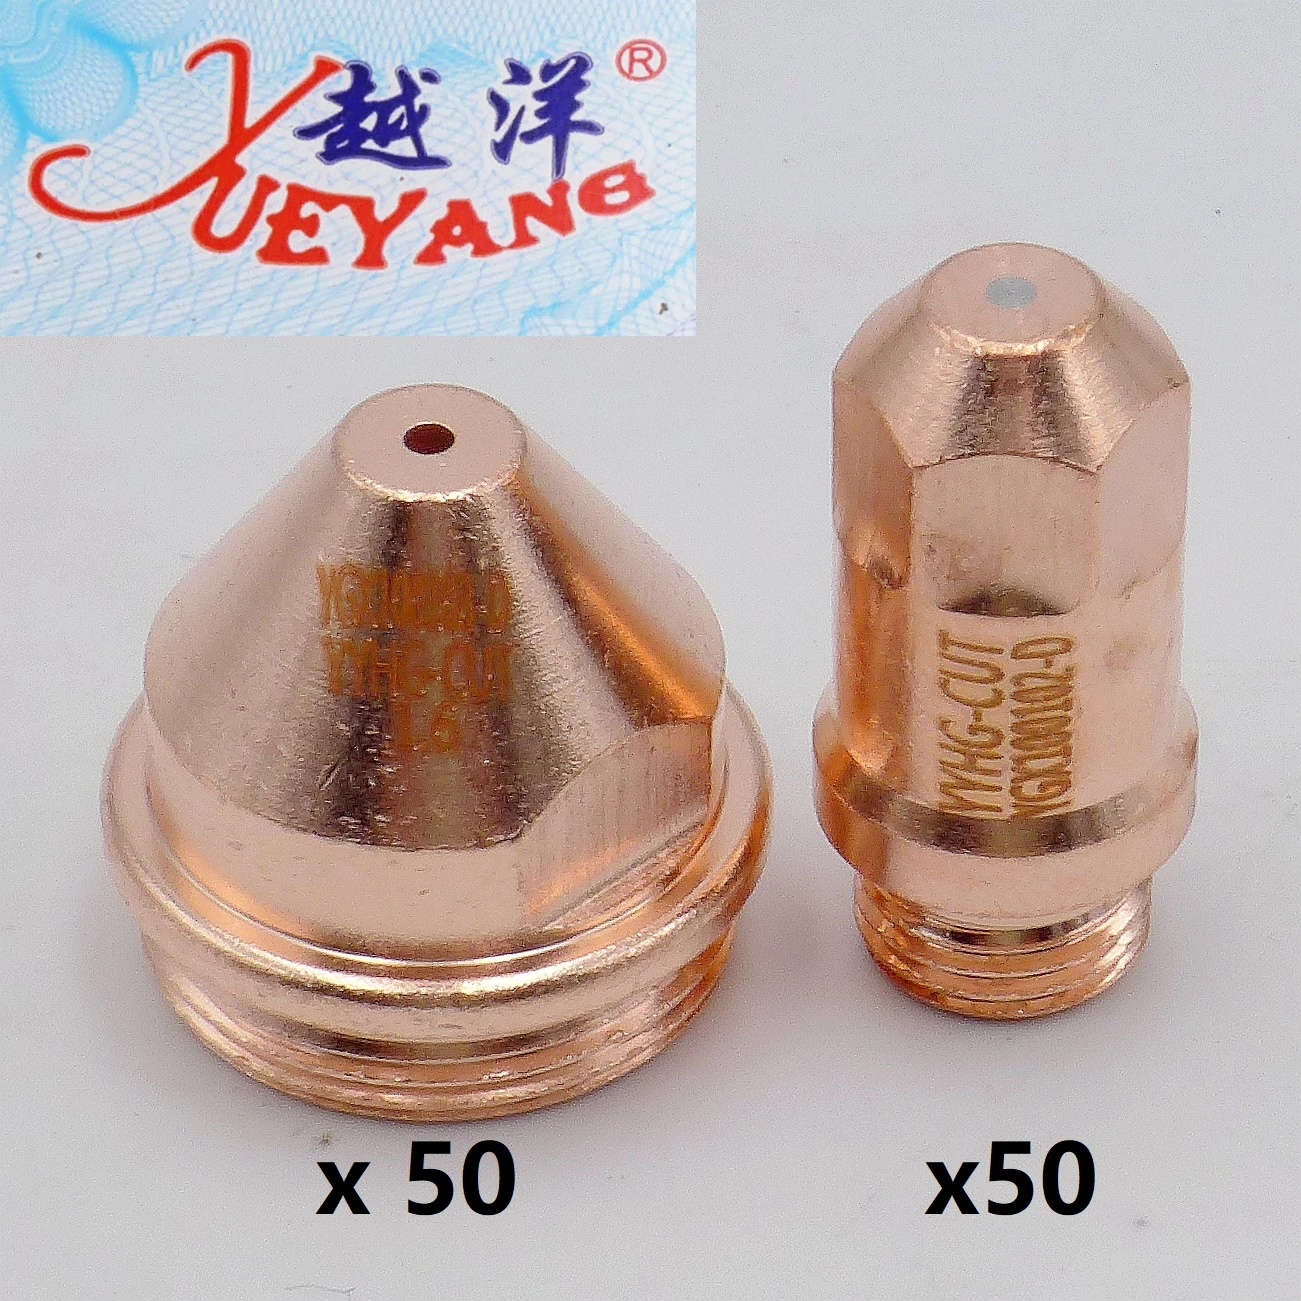 Yueyang Electrode 50 + 1.2 1.6 1.8 Tip 50 YGX-100 YK-100 YK-100H YGX 100103 YK 100102  Huayuan LGK-100 LGK-120 CNC Plasma Torch